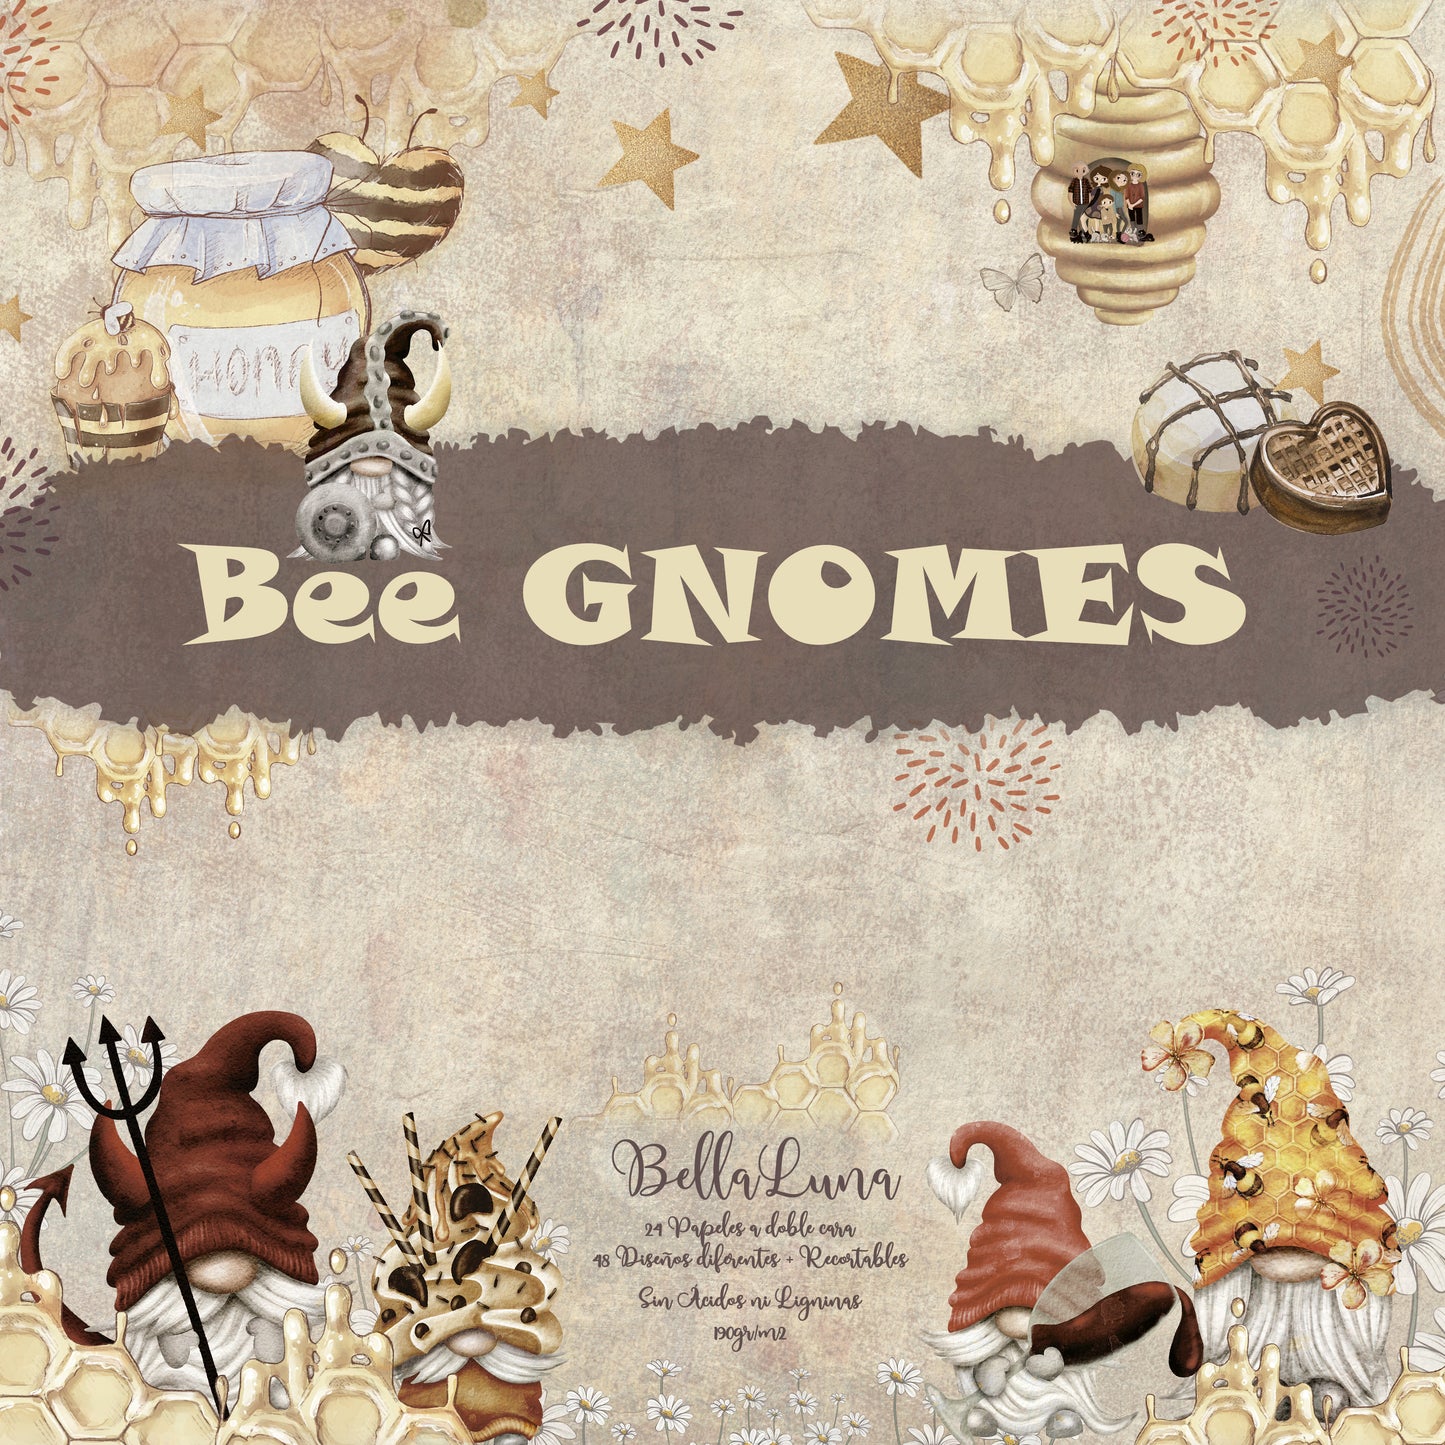 Pad 12x12" Bellaluna Crafts con 24 papeles doble cara Bee Gnomes